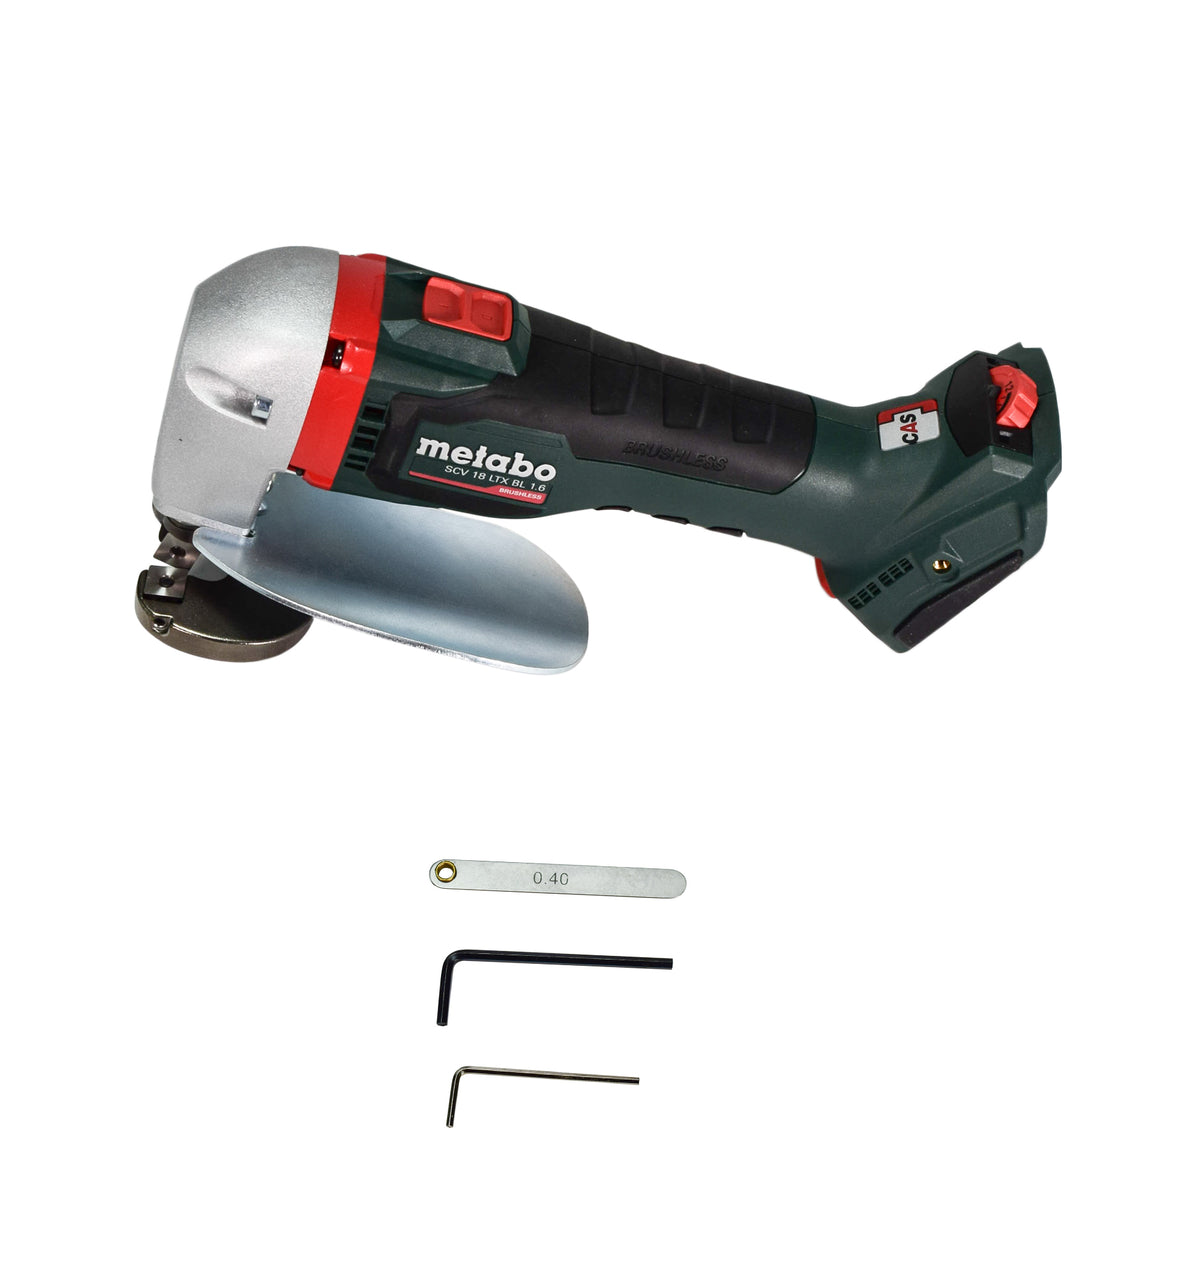 Metabo 601615850 SCV18LTXBL1.6 18V Brushless Cordless Metal Shears [tool only]